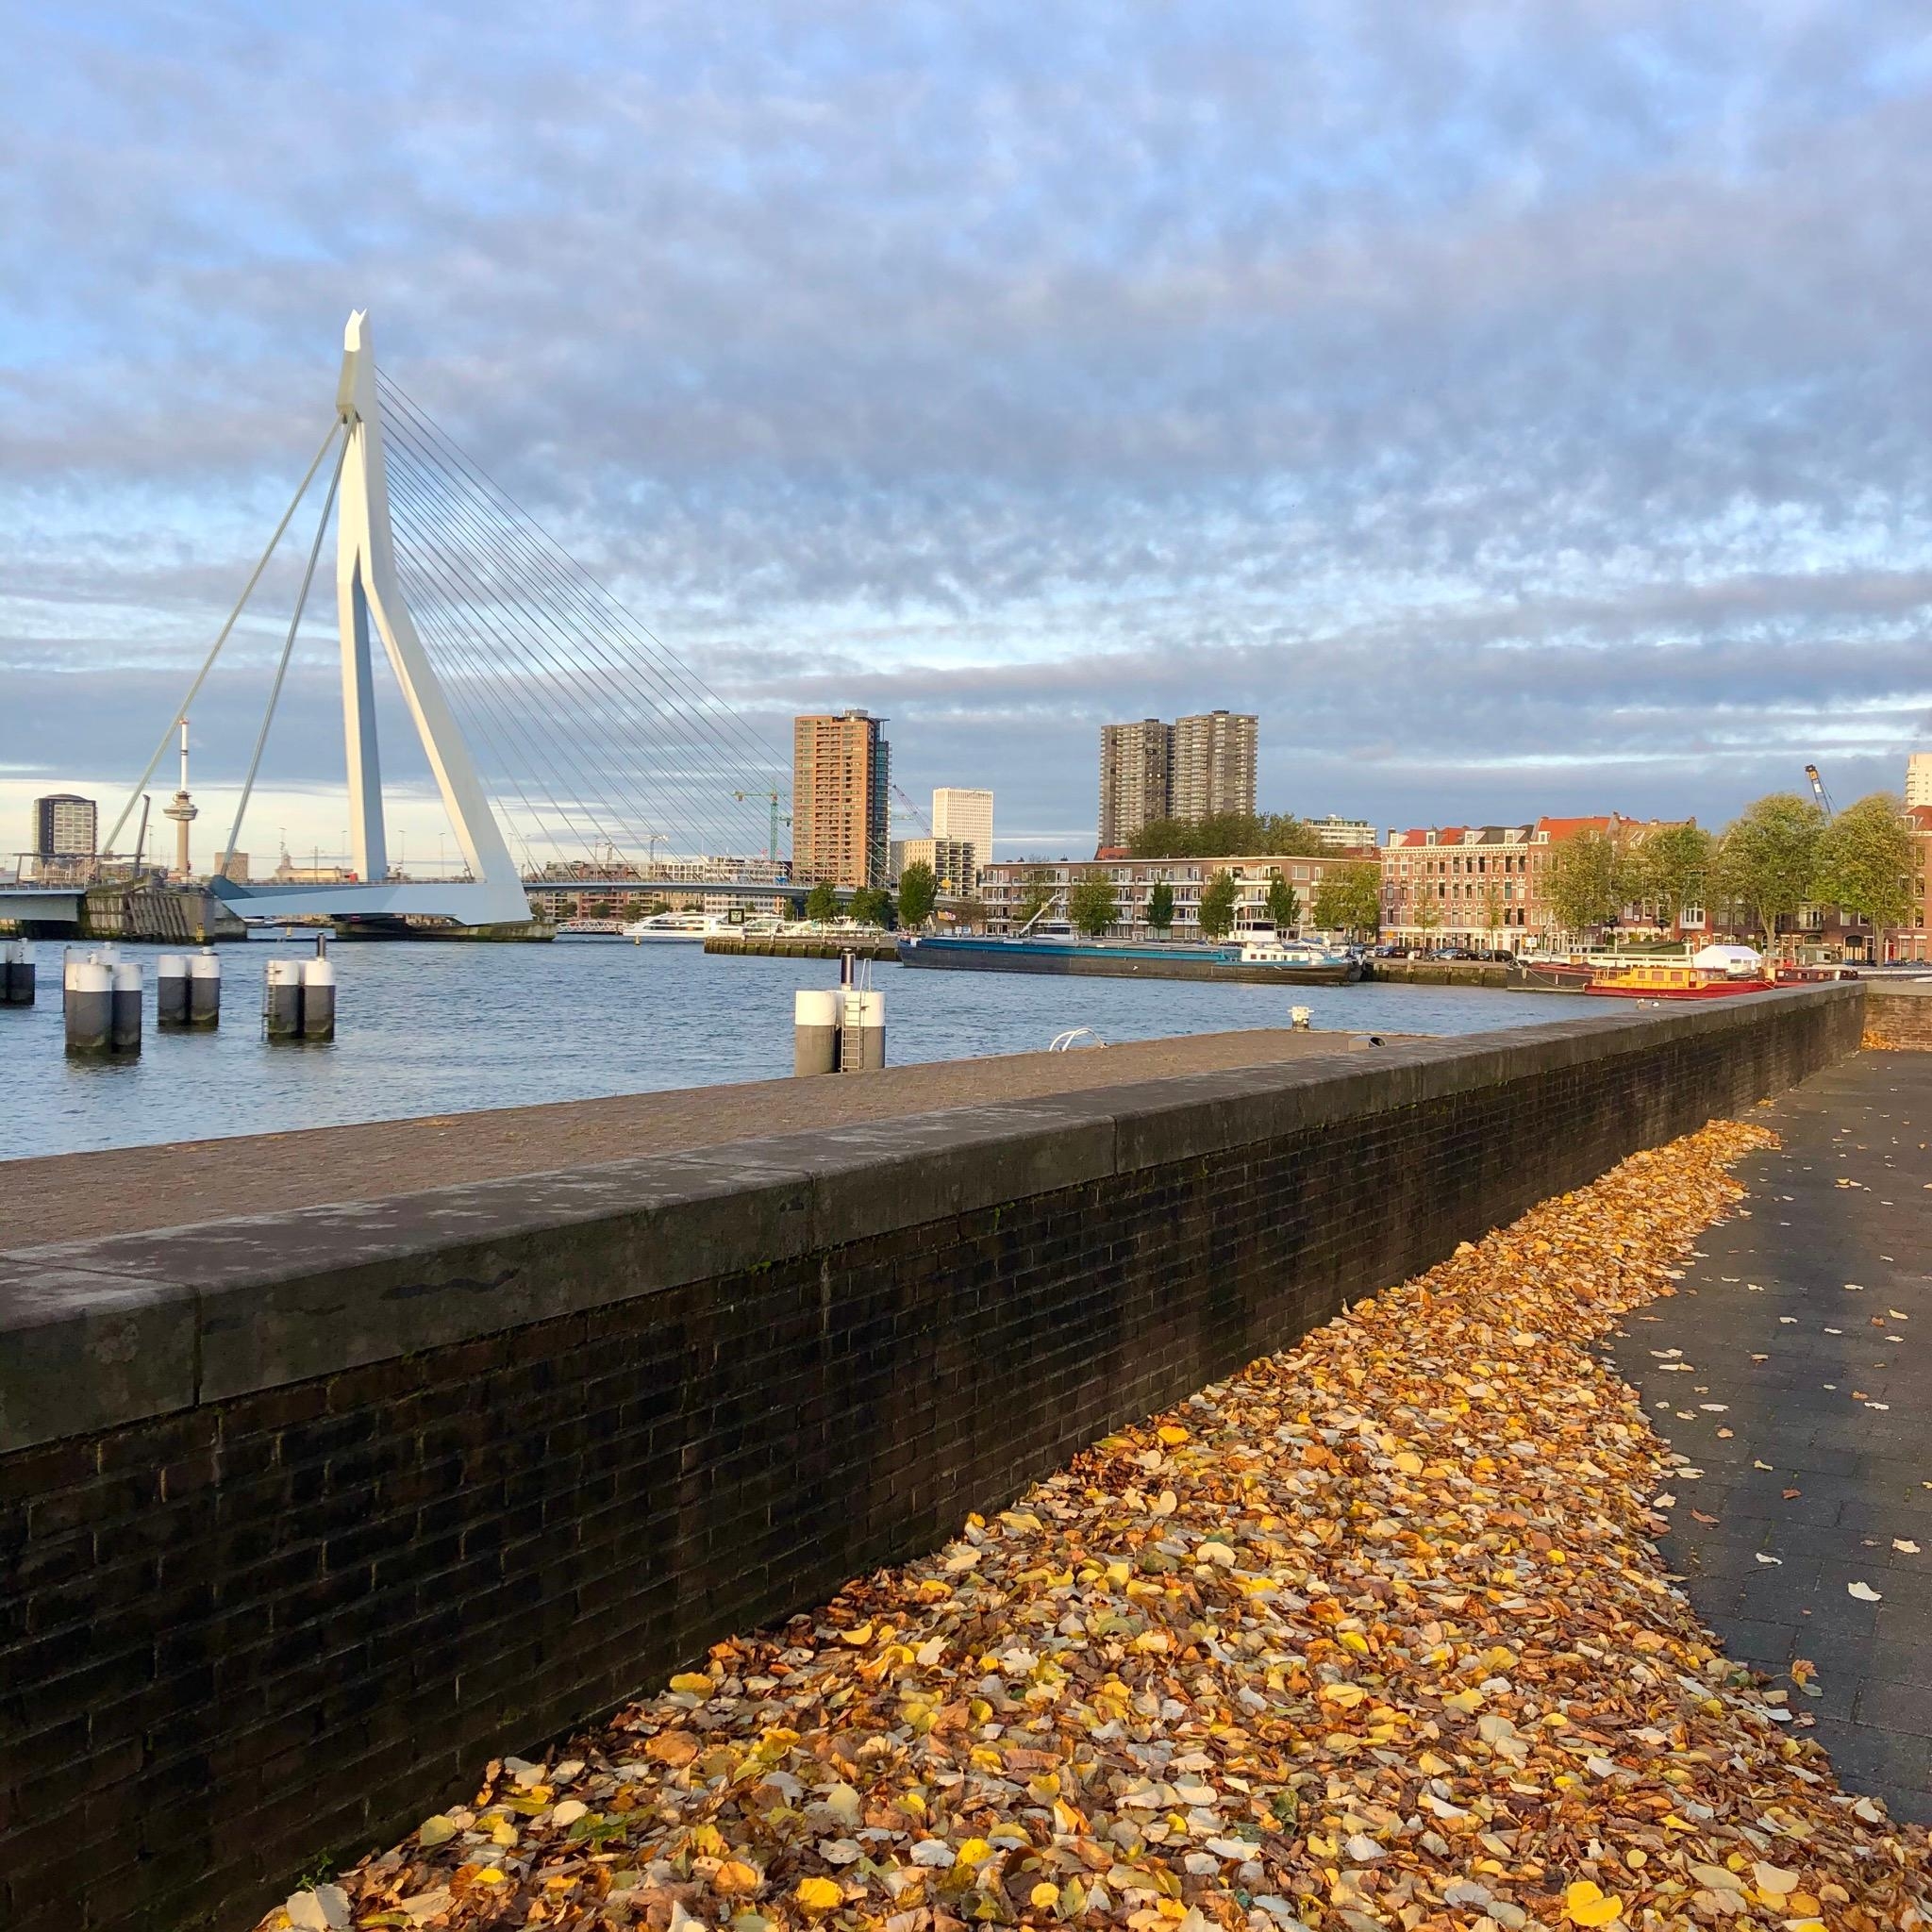 Mein letzter #städtetrip ging nach Rotterdam. Auf dem Bild die Erasmusbrug, eines der Wahrzeichen. #travelchallenge